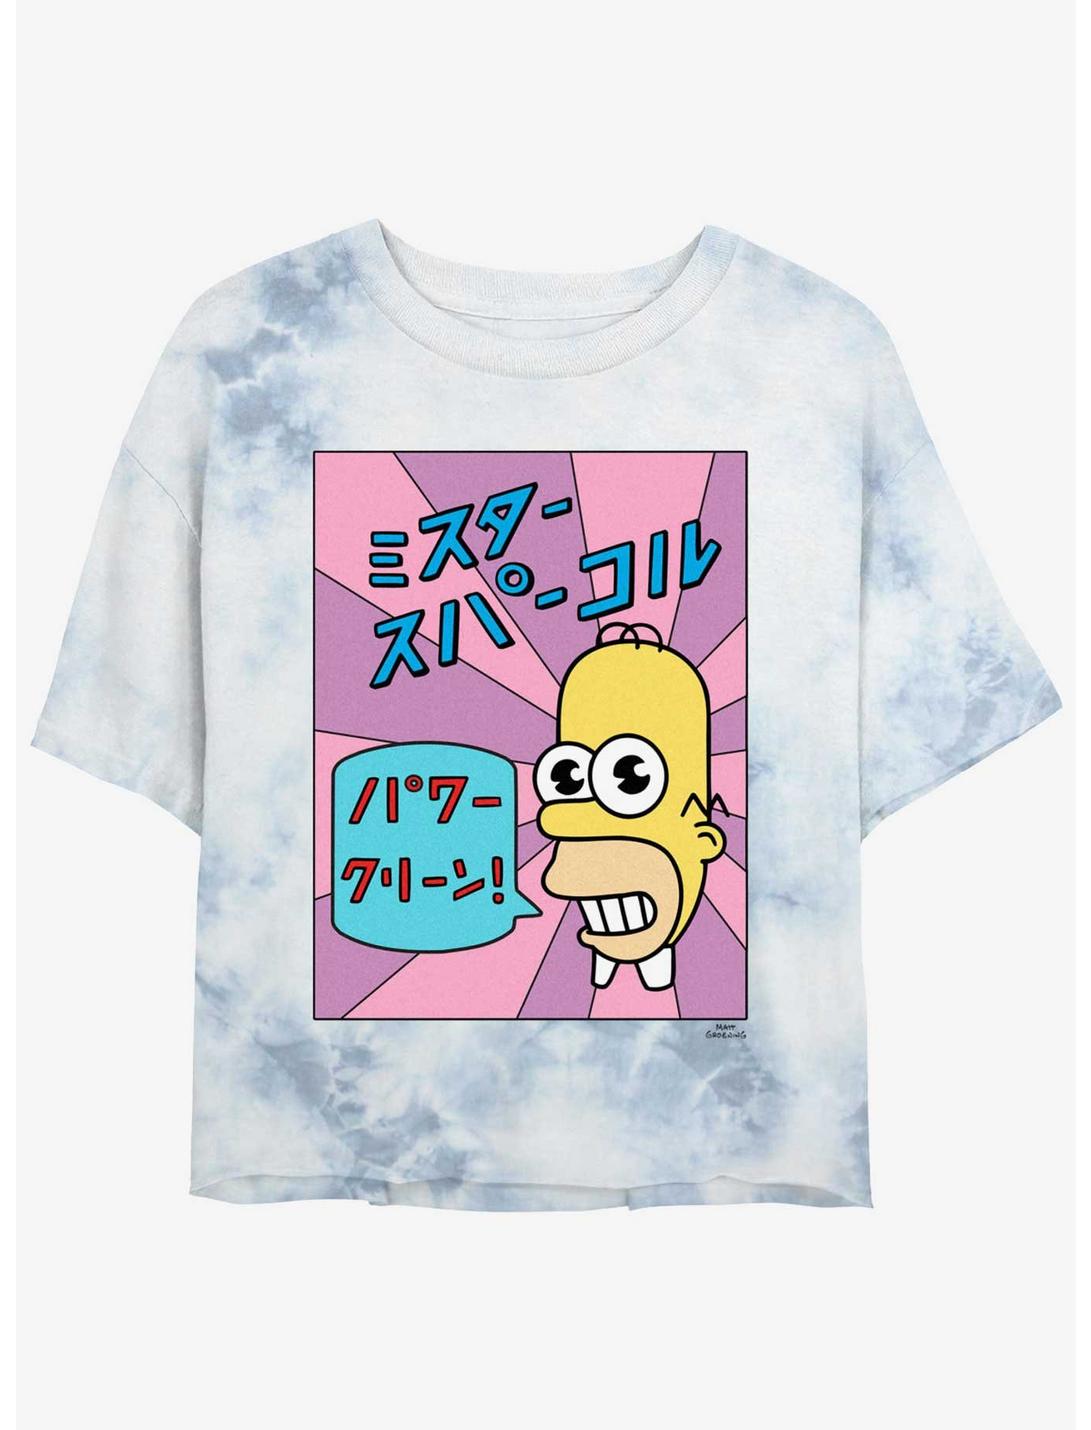 The Simpsons Mr. Sparkle Tie-Dye Womens Crop T-Shirt, WHITEBLUE, hi-res